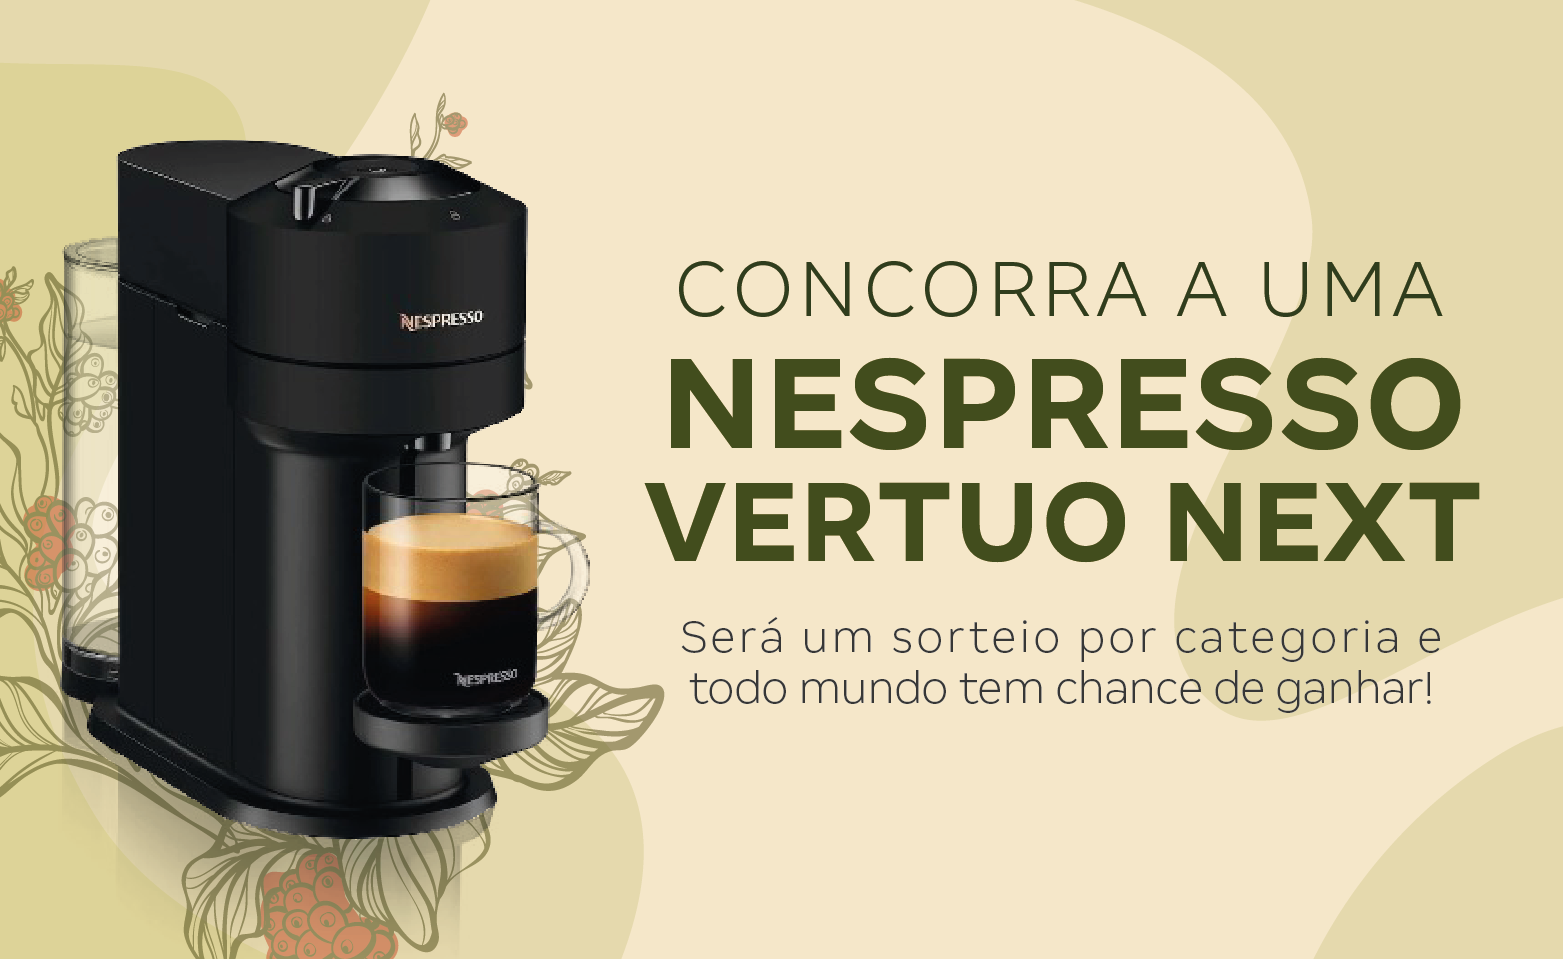 KV Nespresso_v2_banner mob- 375x230 px.png